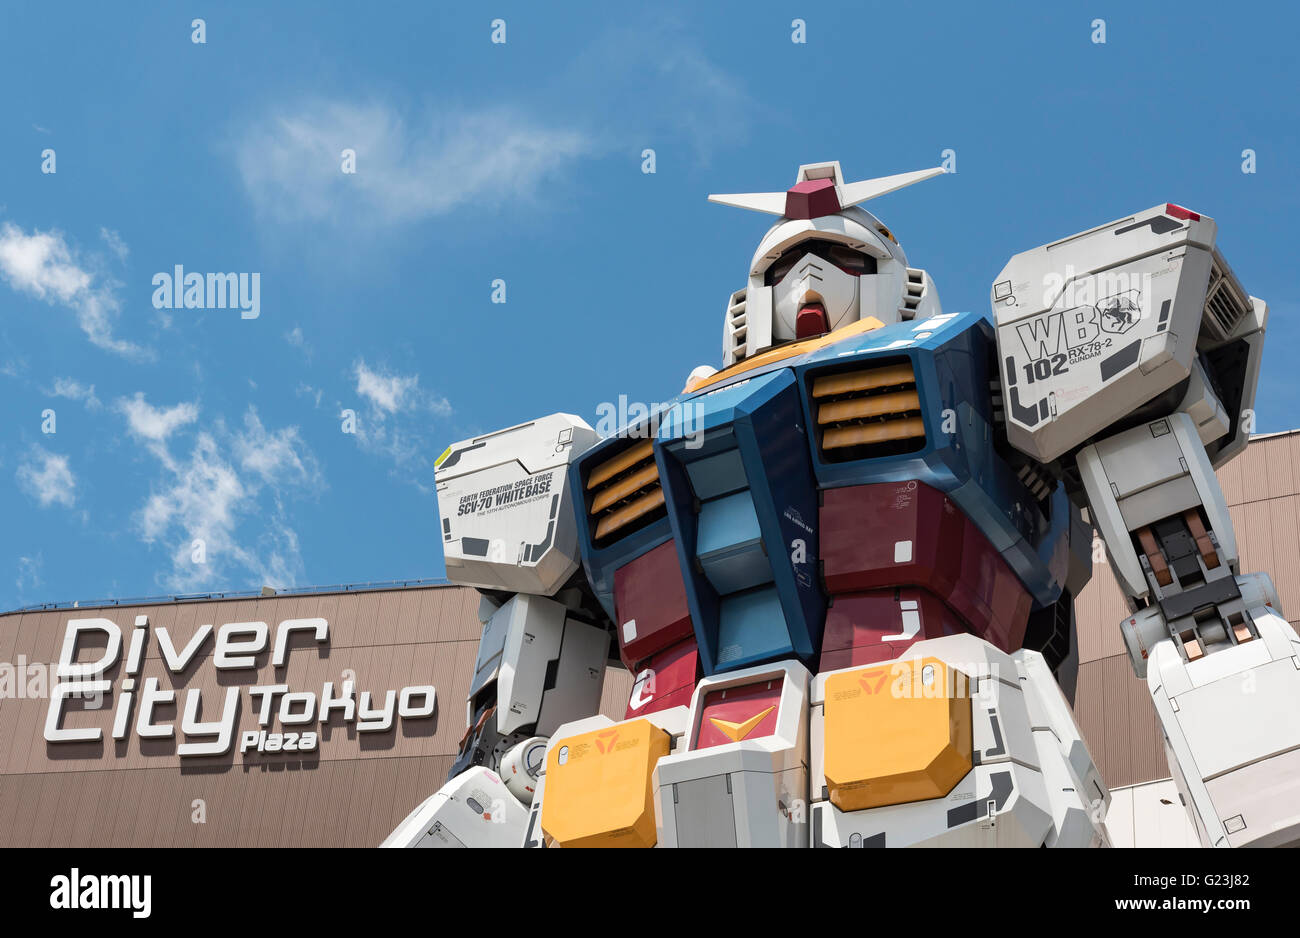 Riesige Gundam Roboter Statue, Odaiba (Daiba), Tokio, Japan Stockfoto